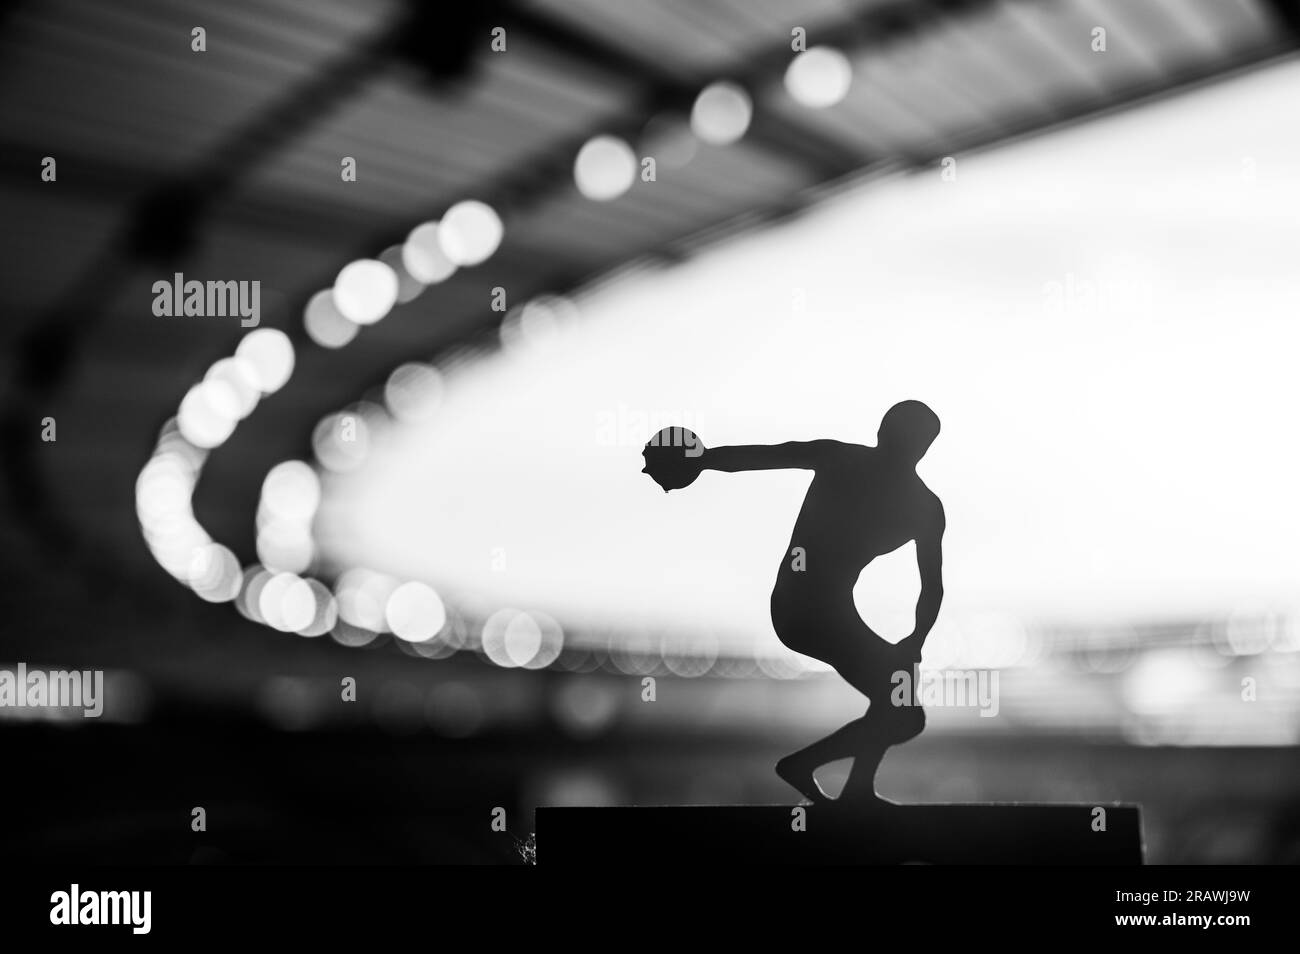 Silhouette di Discus Thrower, concentrata e determinata in un'affascinante atmosfera serale. Foto di atletica leggera per i Giochi estivi di Parigi. Foto Stock